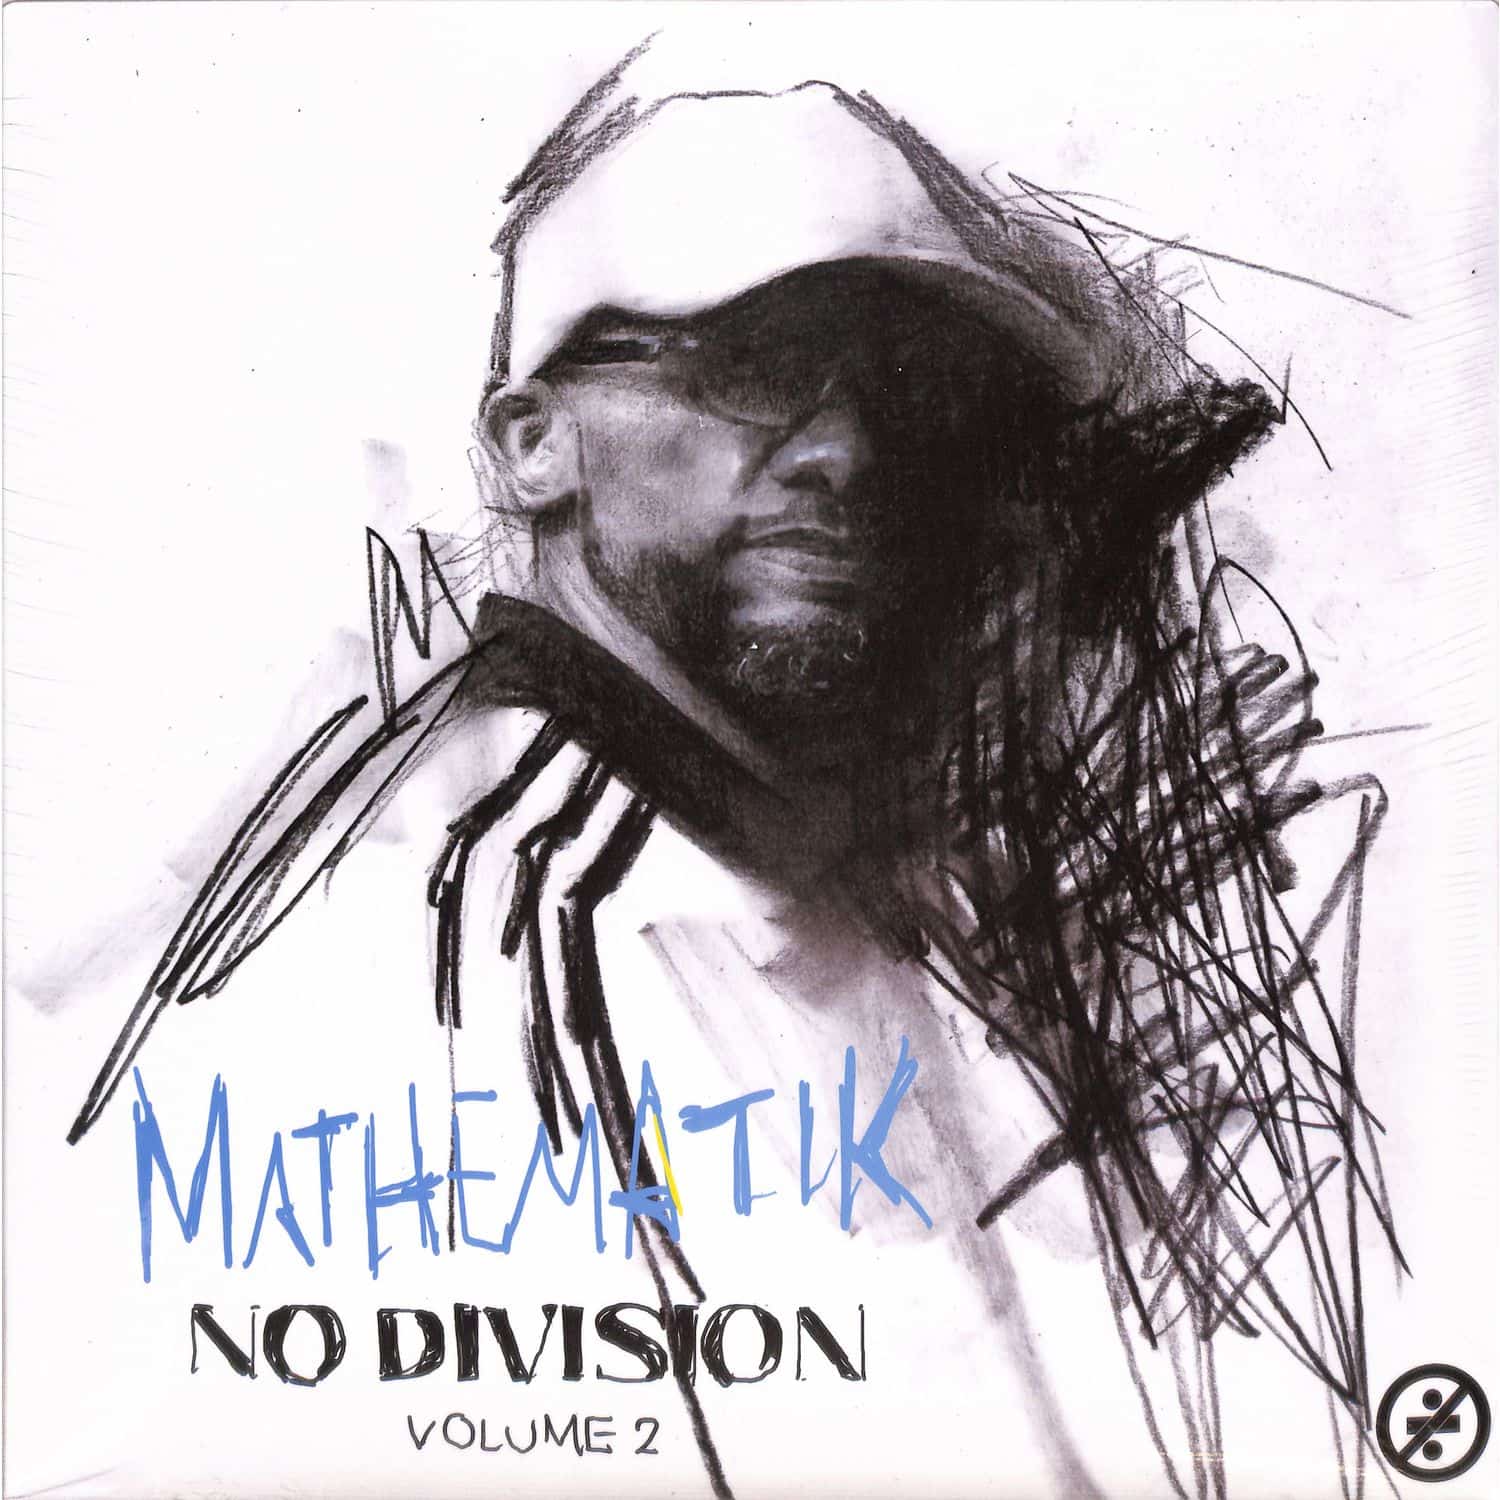 Mathematik - NO DIVISION VOL.2 